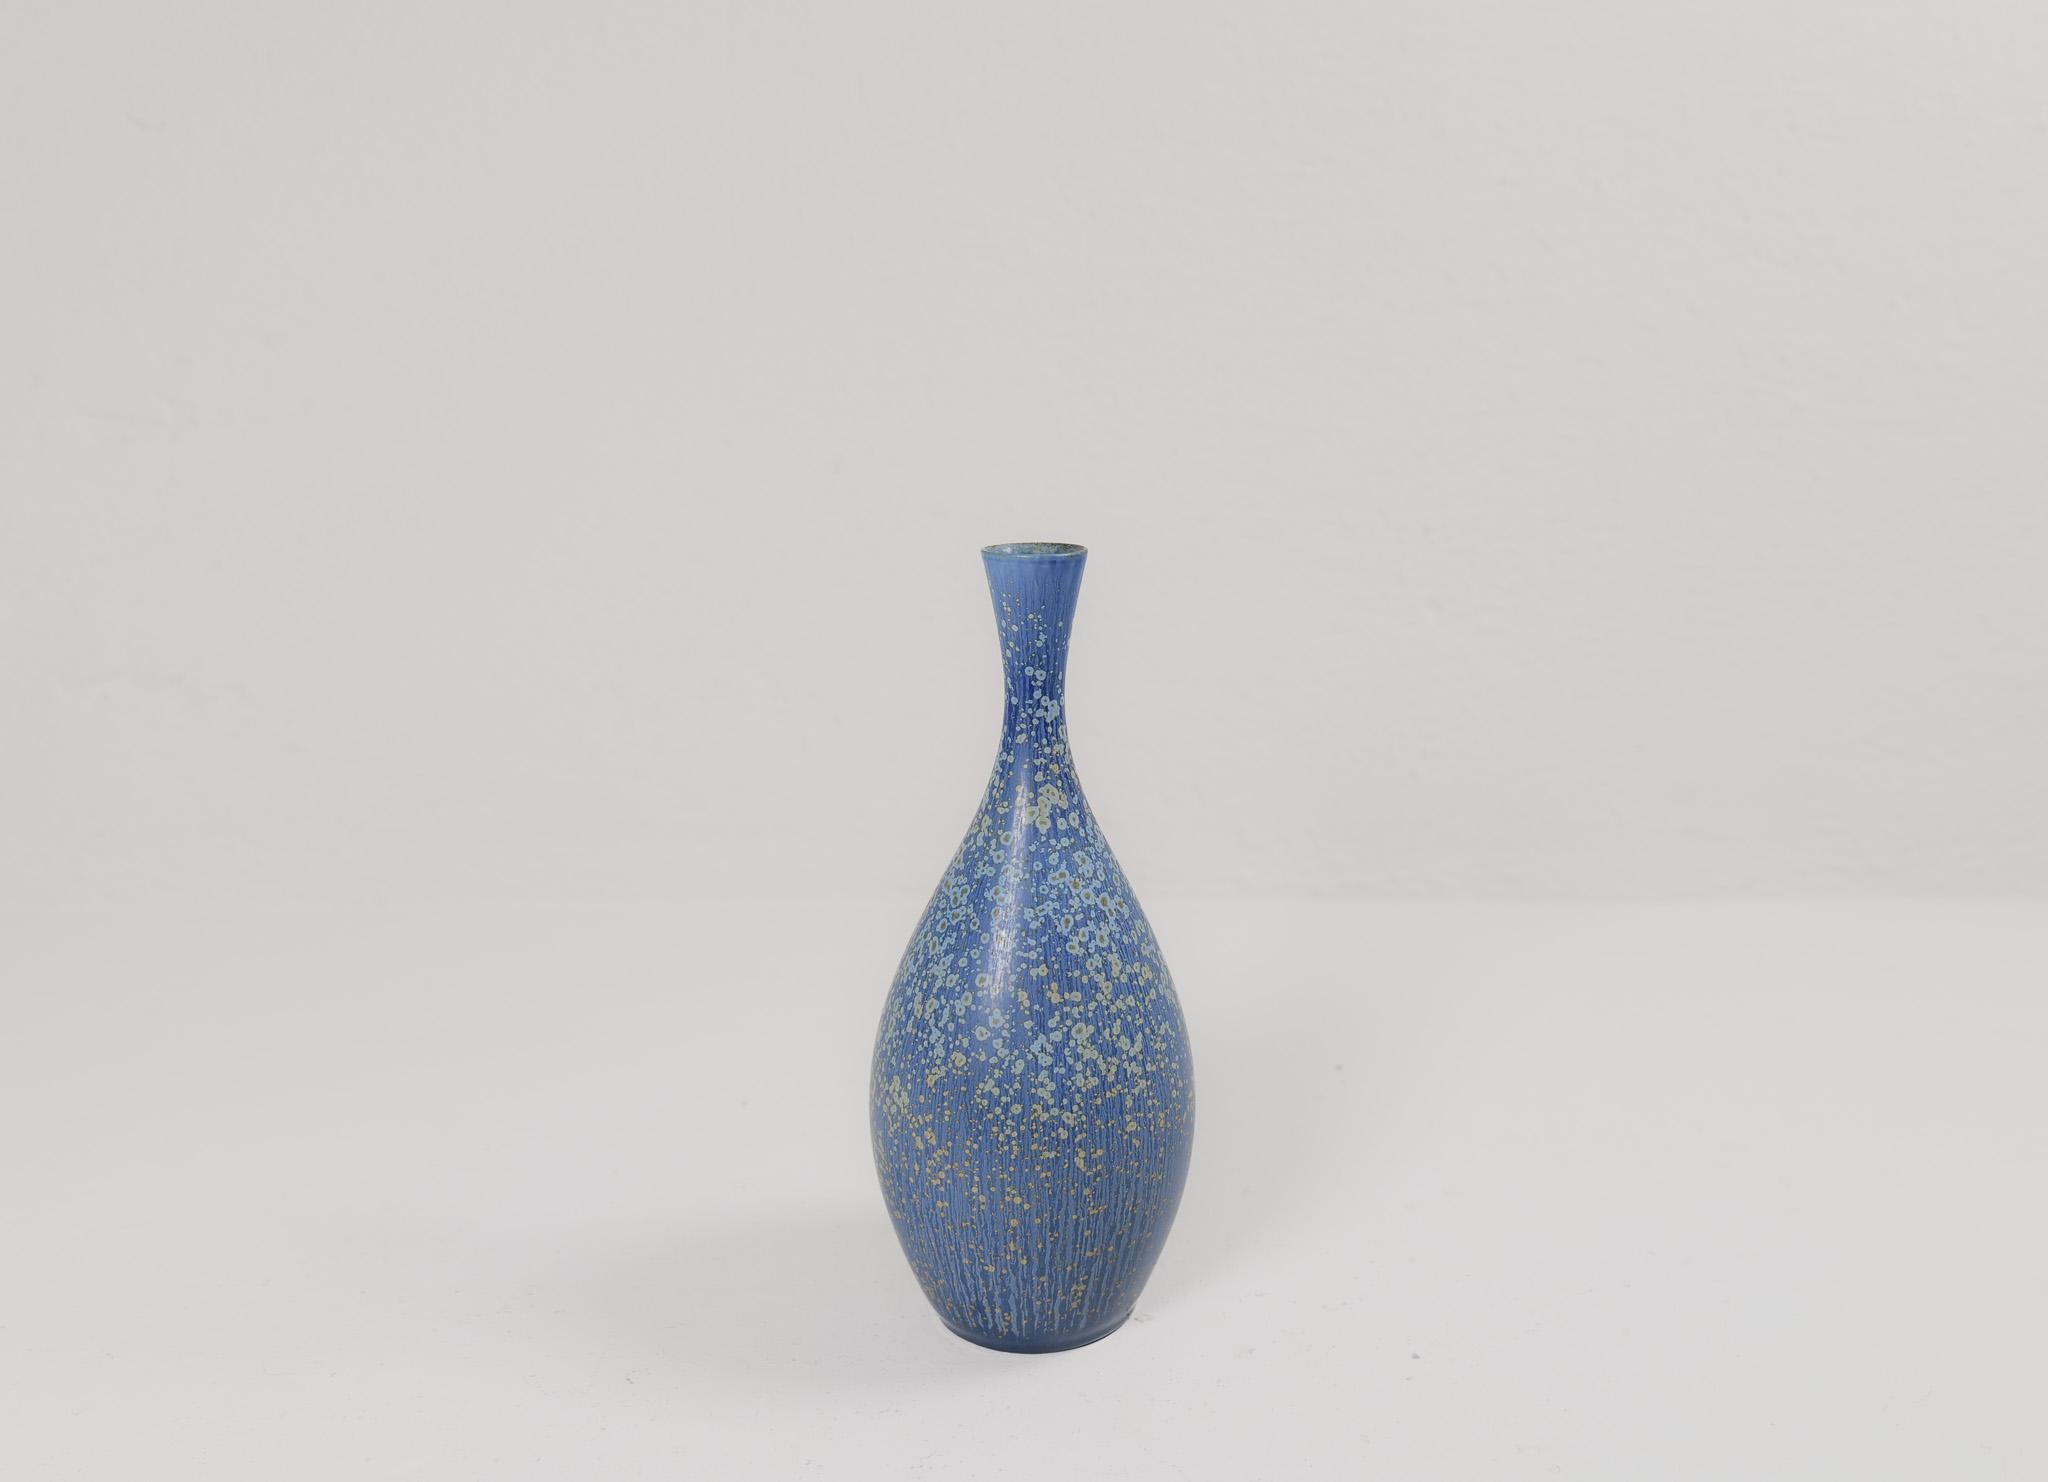 Ceramic Midcentury Modern Sculptural Stoneware Vase Carl Harry Stålhane, Sweden, 1950s For Sale